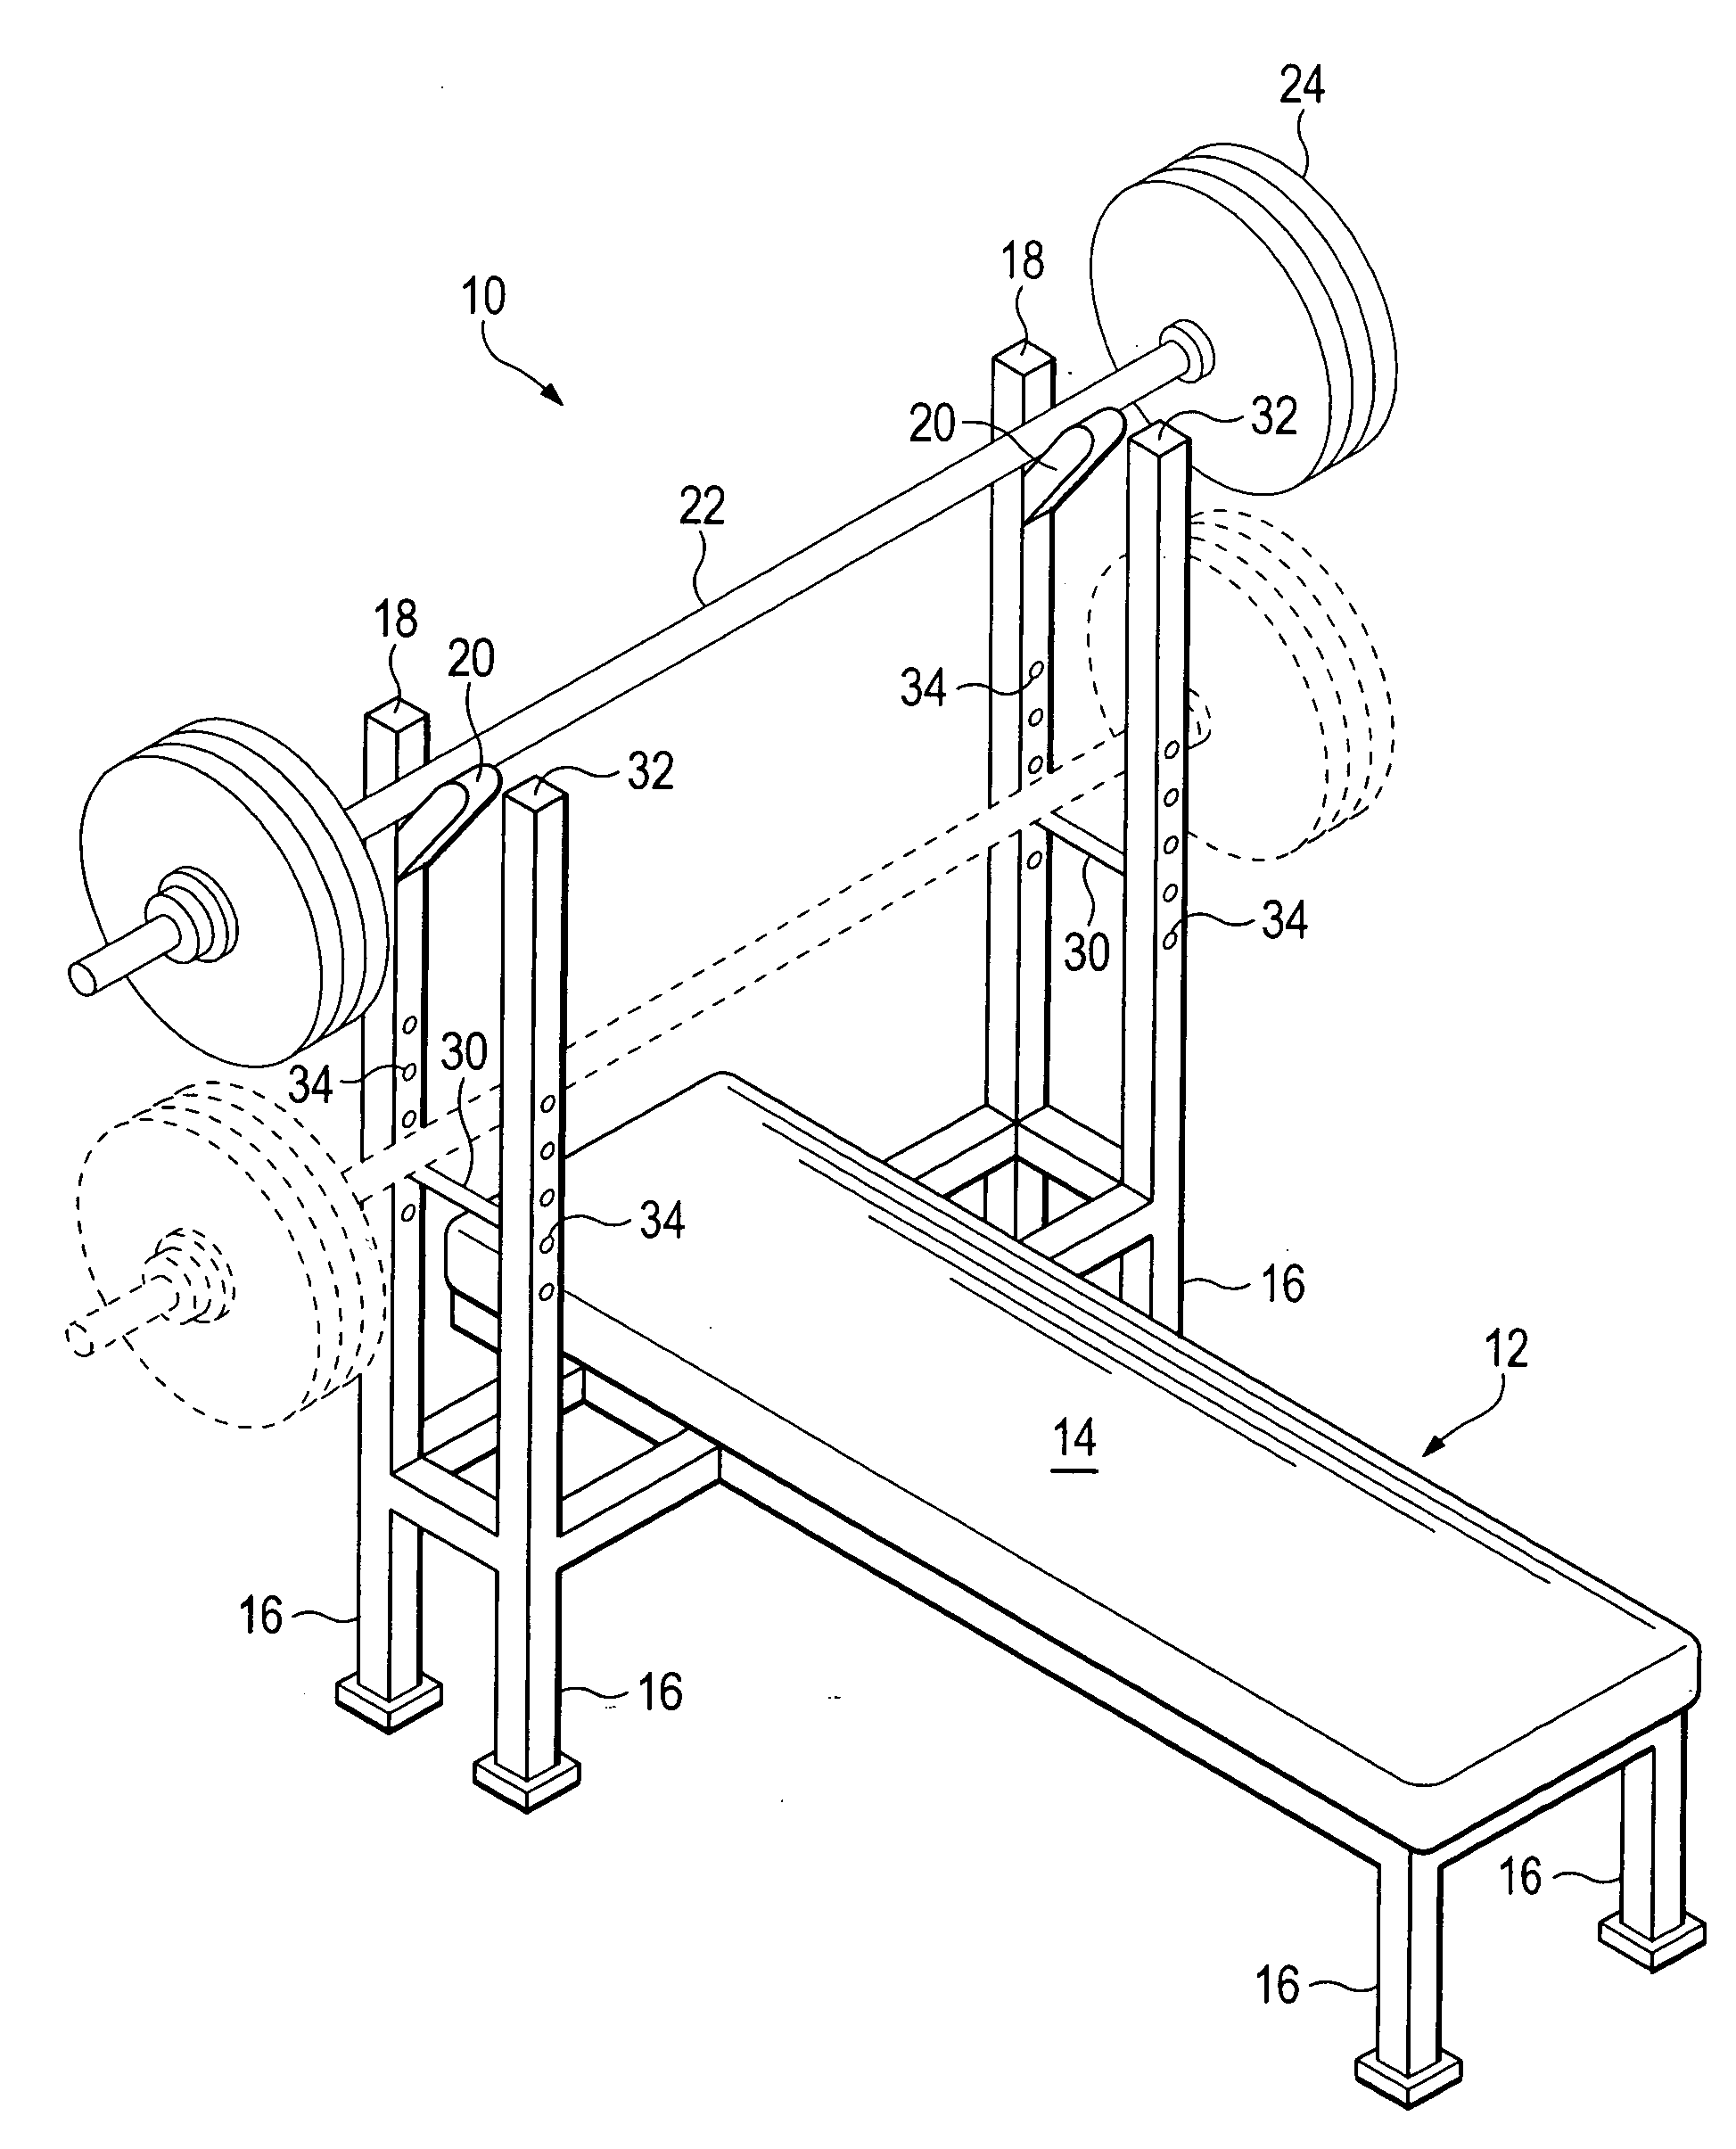 Bench press